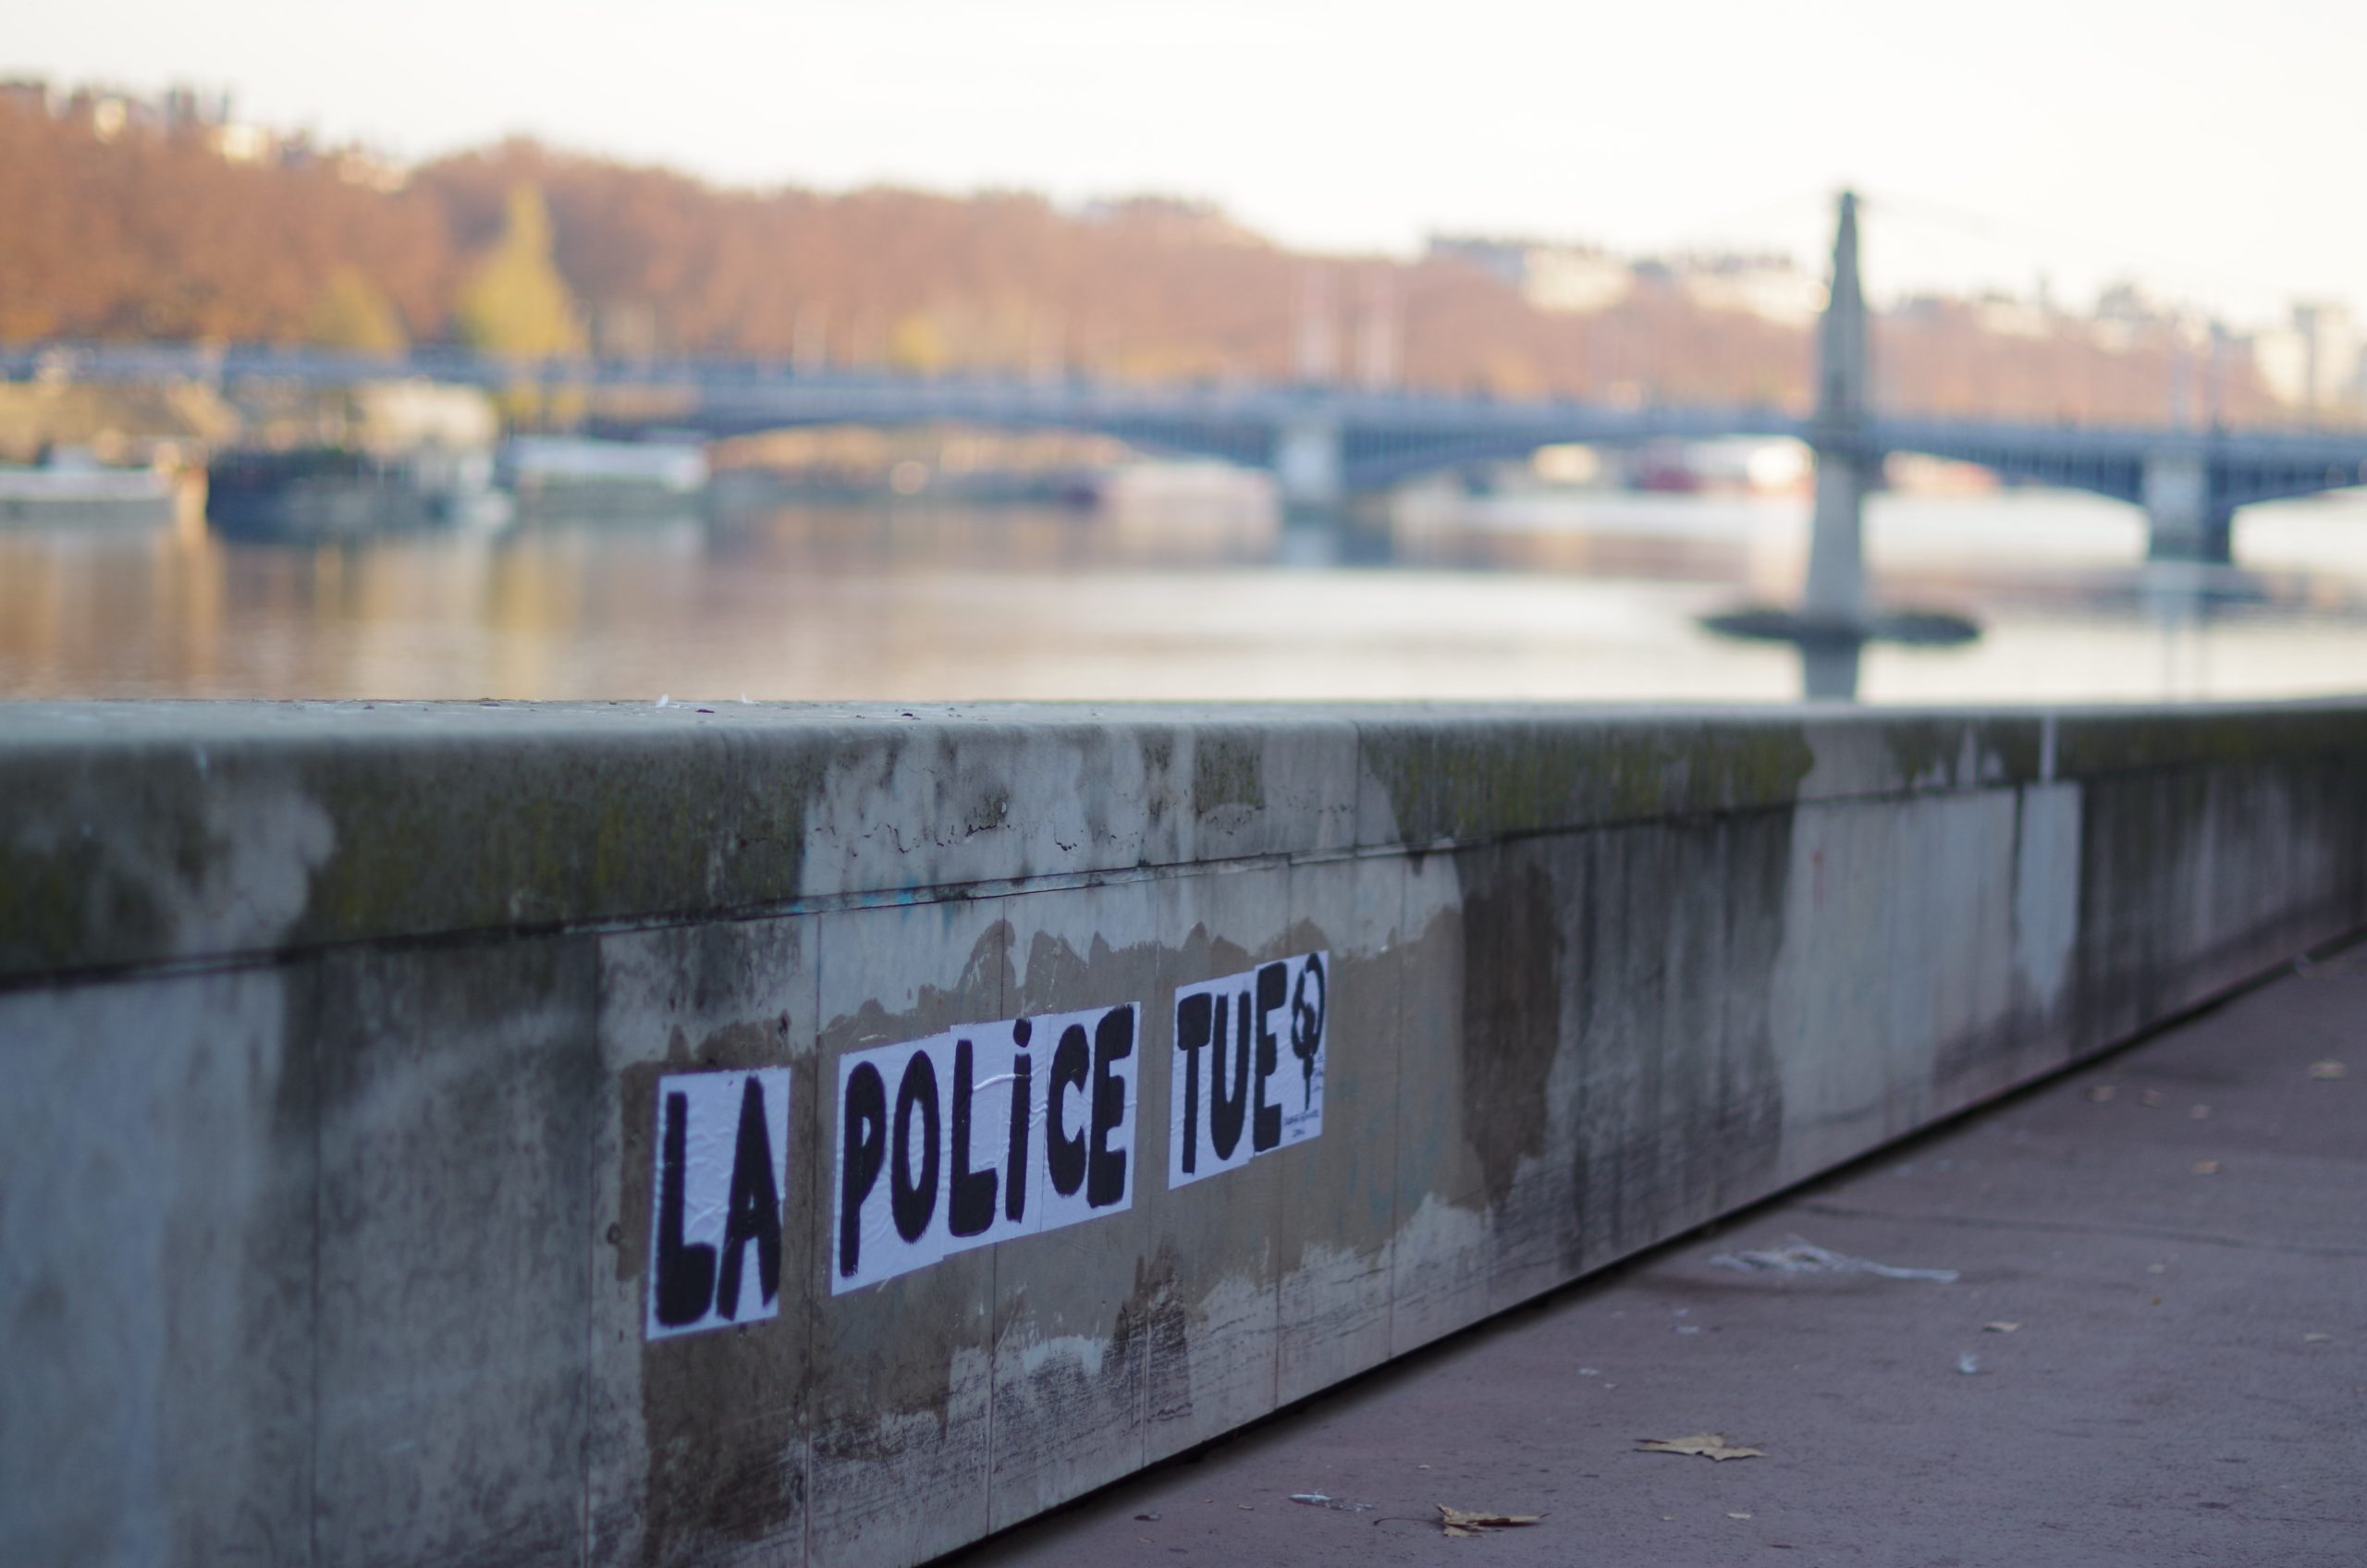 Message 'la police tue' à Lyon (France) en novembre 2020 violences policières